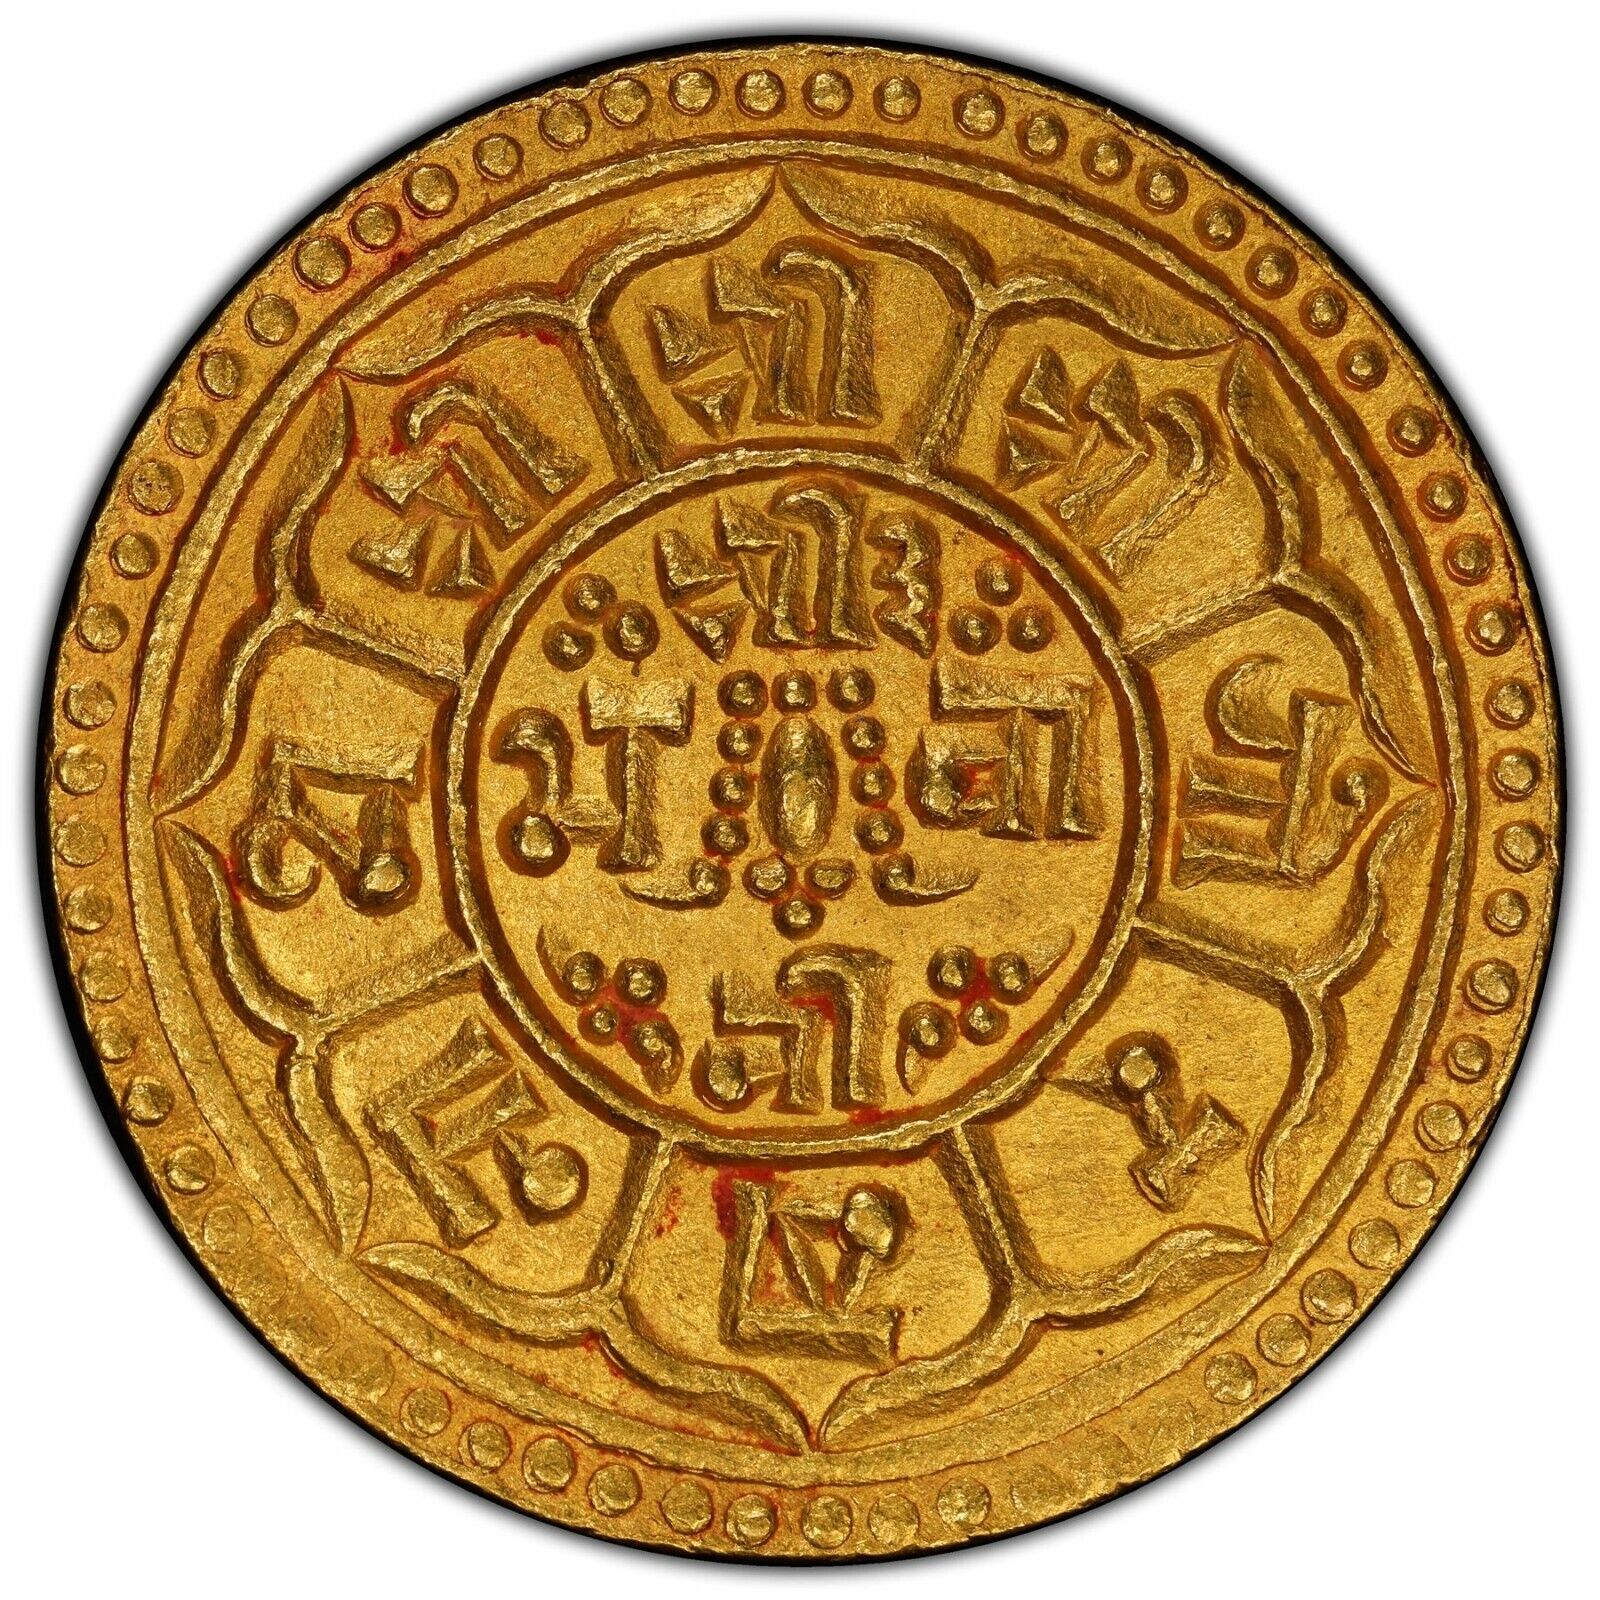 Nepal 1903, Prithvi Bir Bikram 1881-1911, Av Mohar Gold Coin Se1825. Pcgs Ms 65